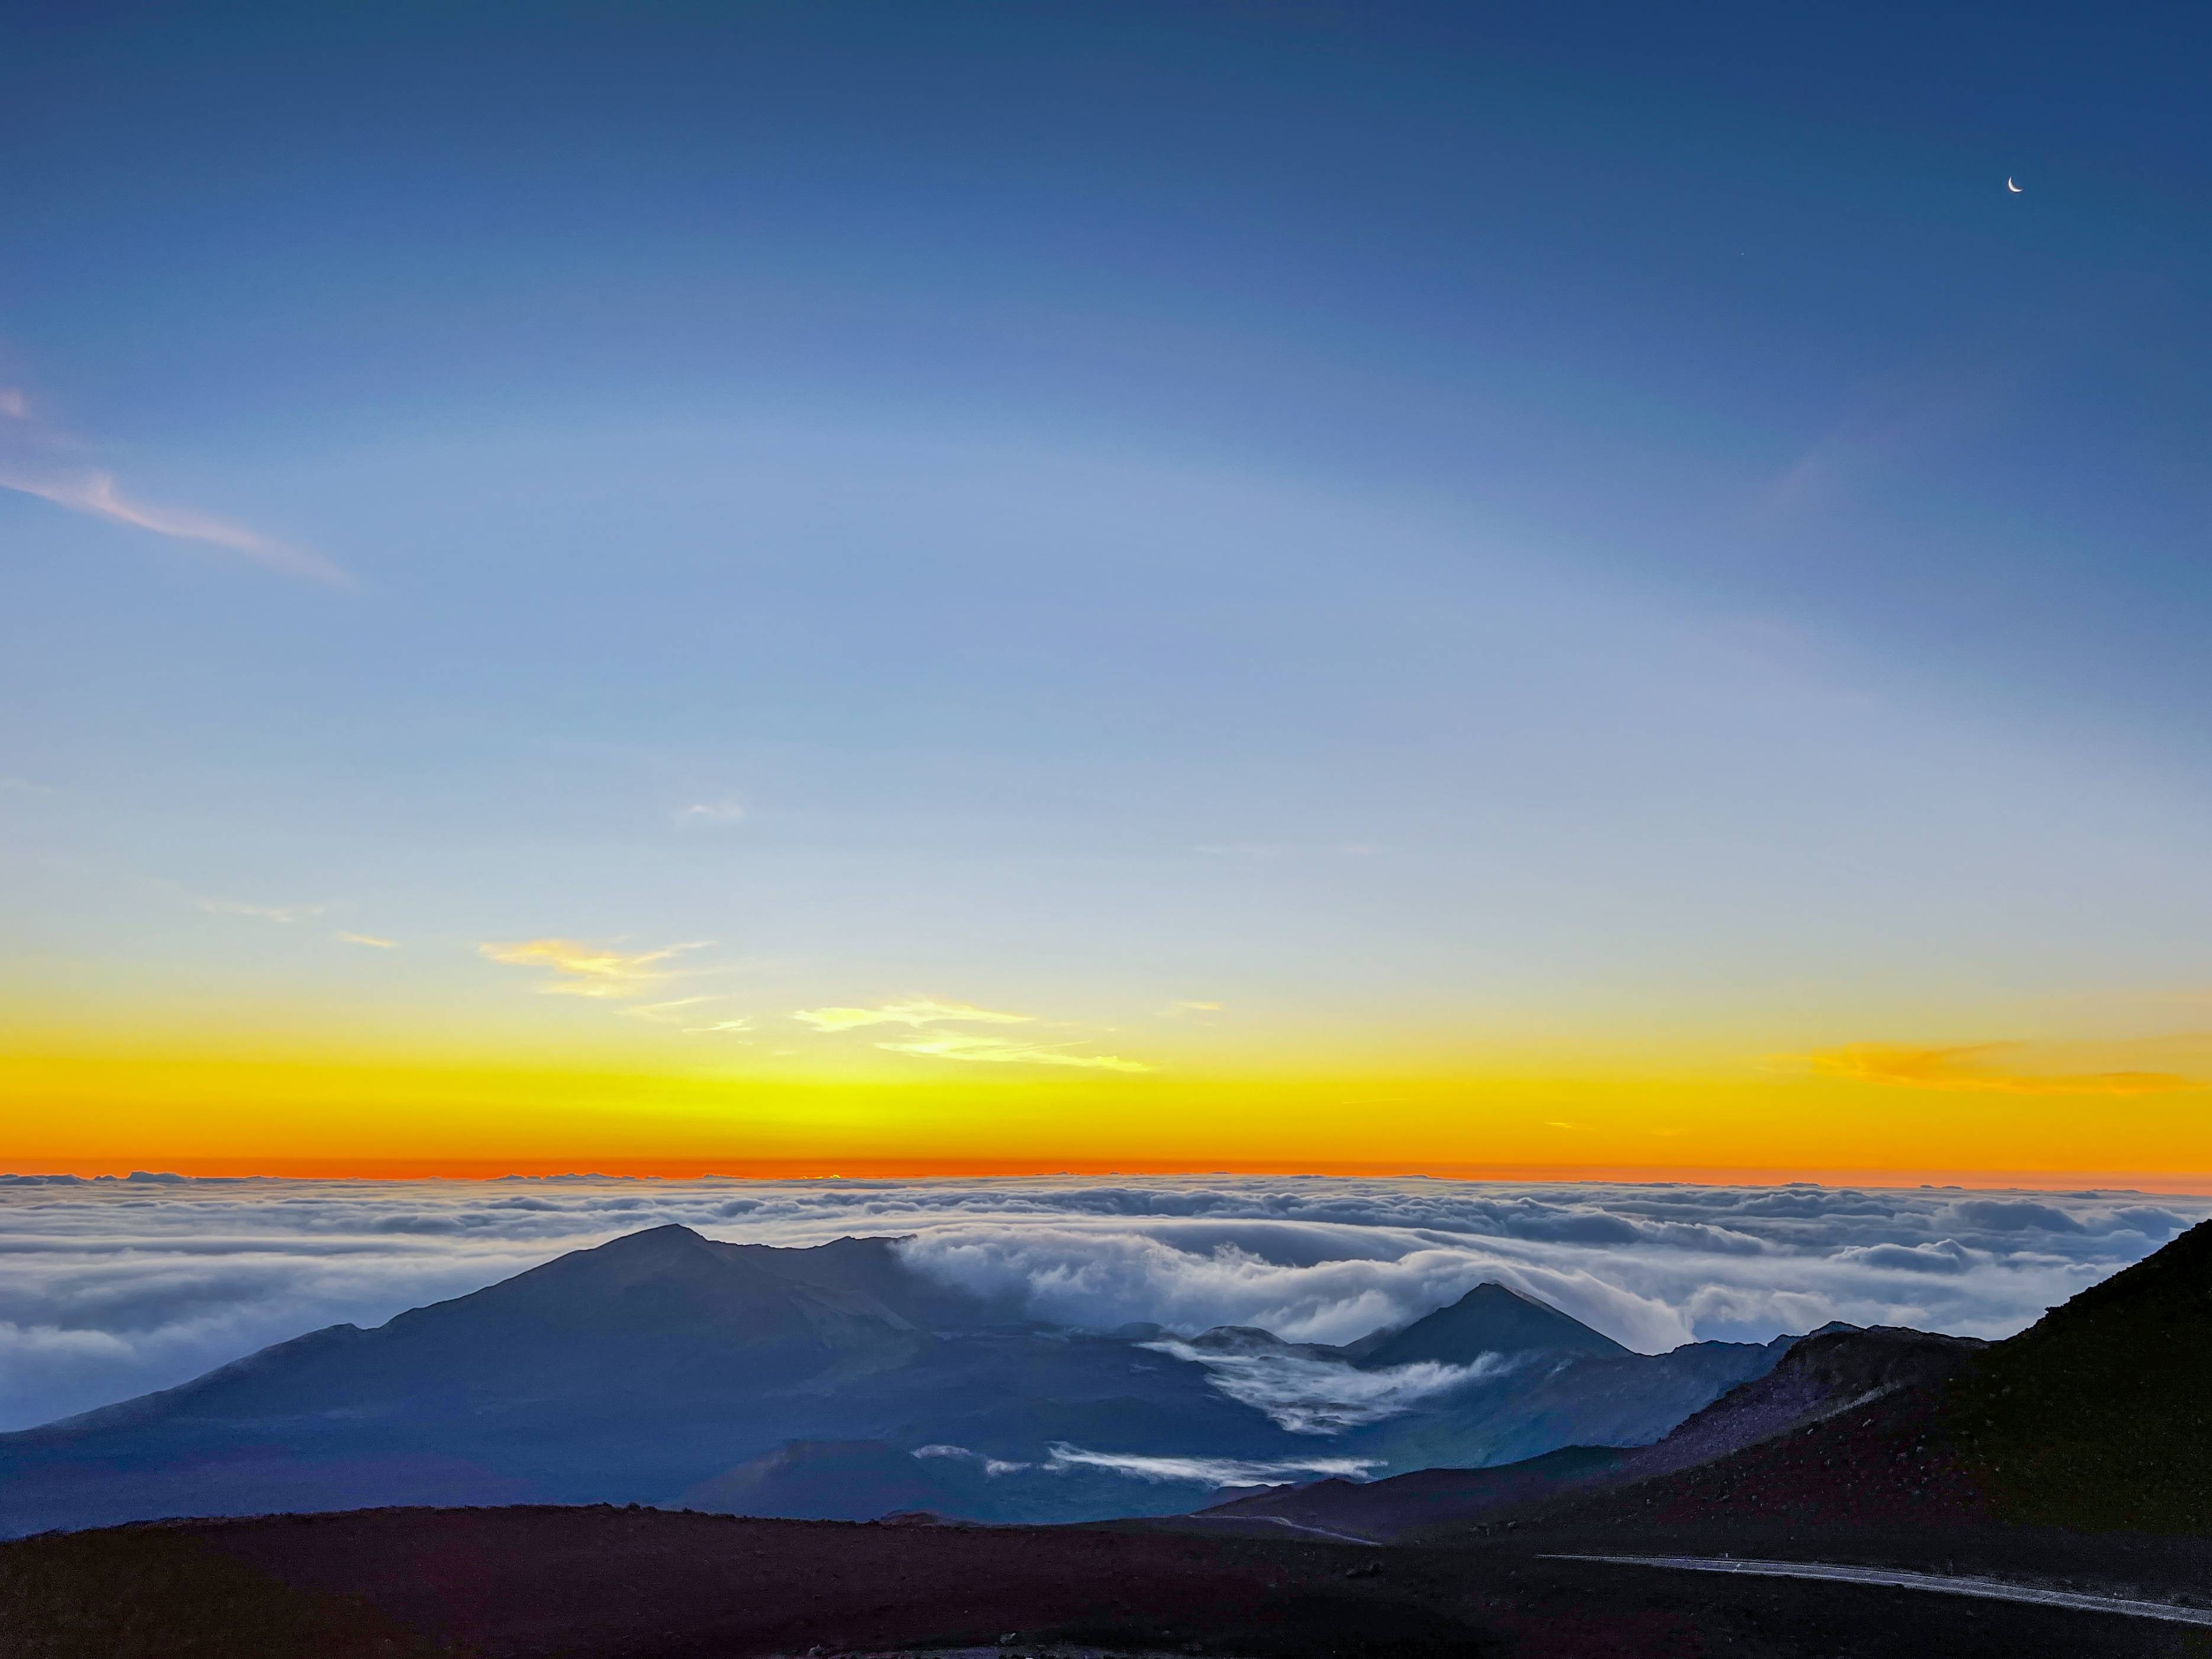 原创公认世界上最美的日出位于夏威夷茂宜岛风景美到窒息